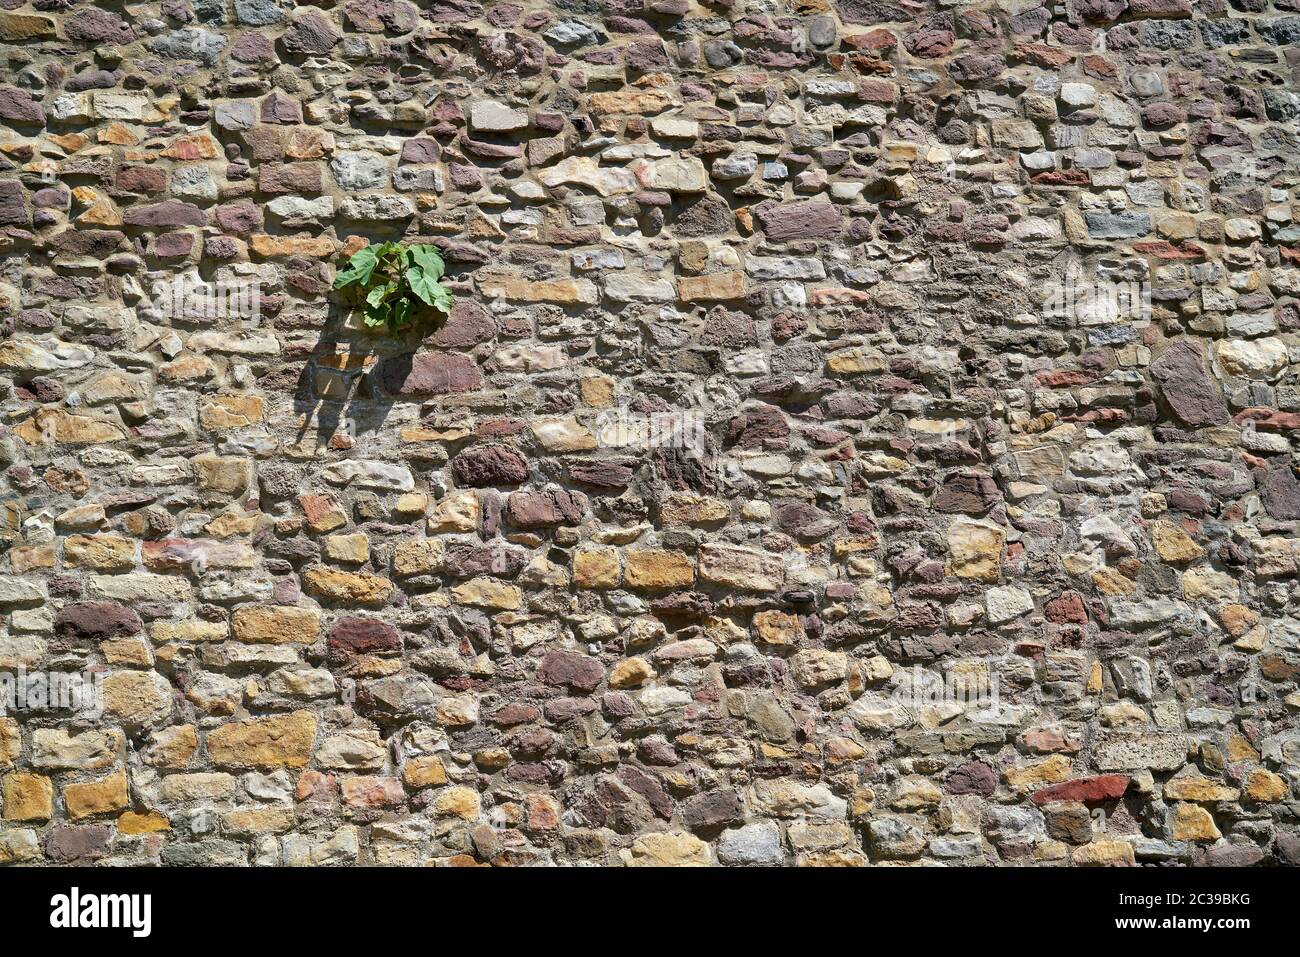 Lotta di sopravvivenza di una pianta di zucca presso le storiche mura della città di Magdeburgo in Germania Foto Stock